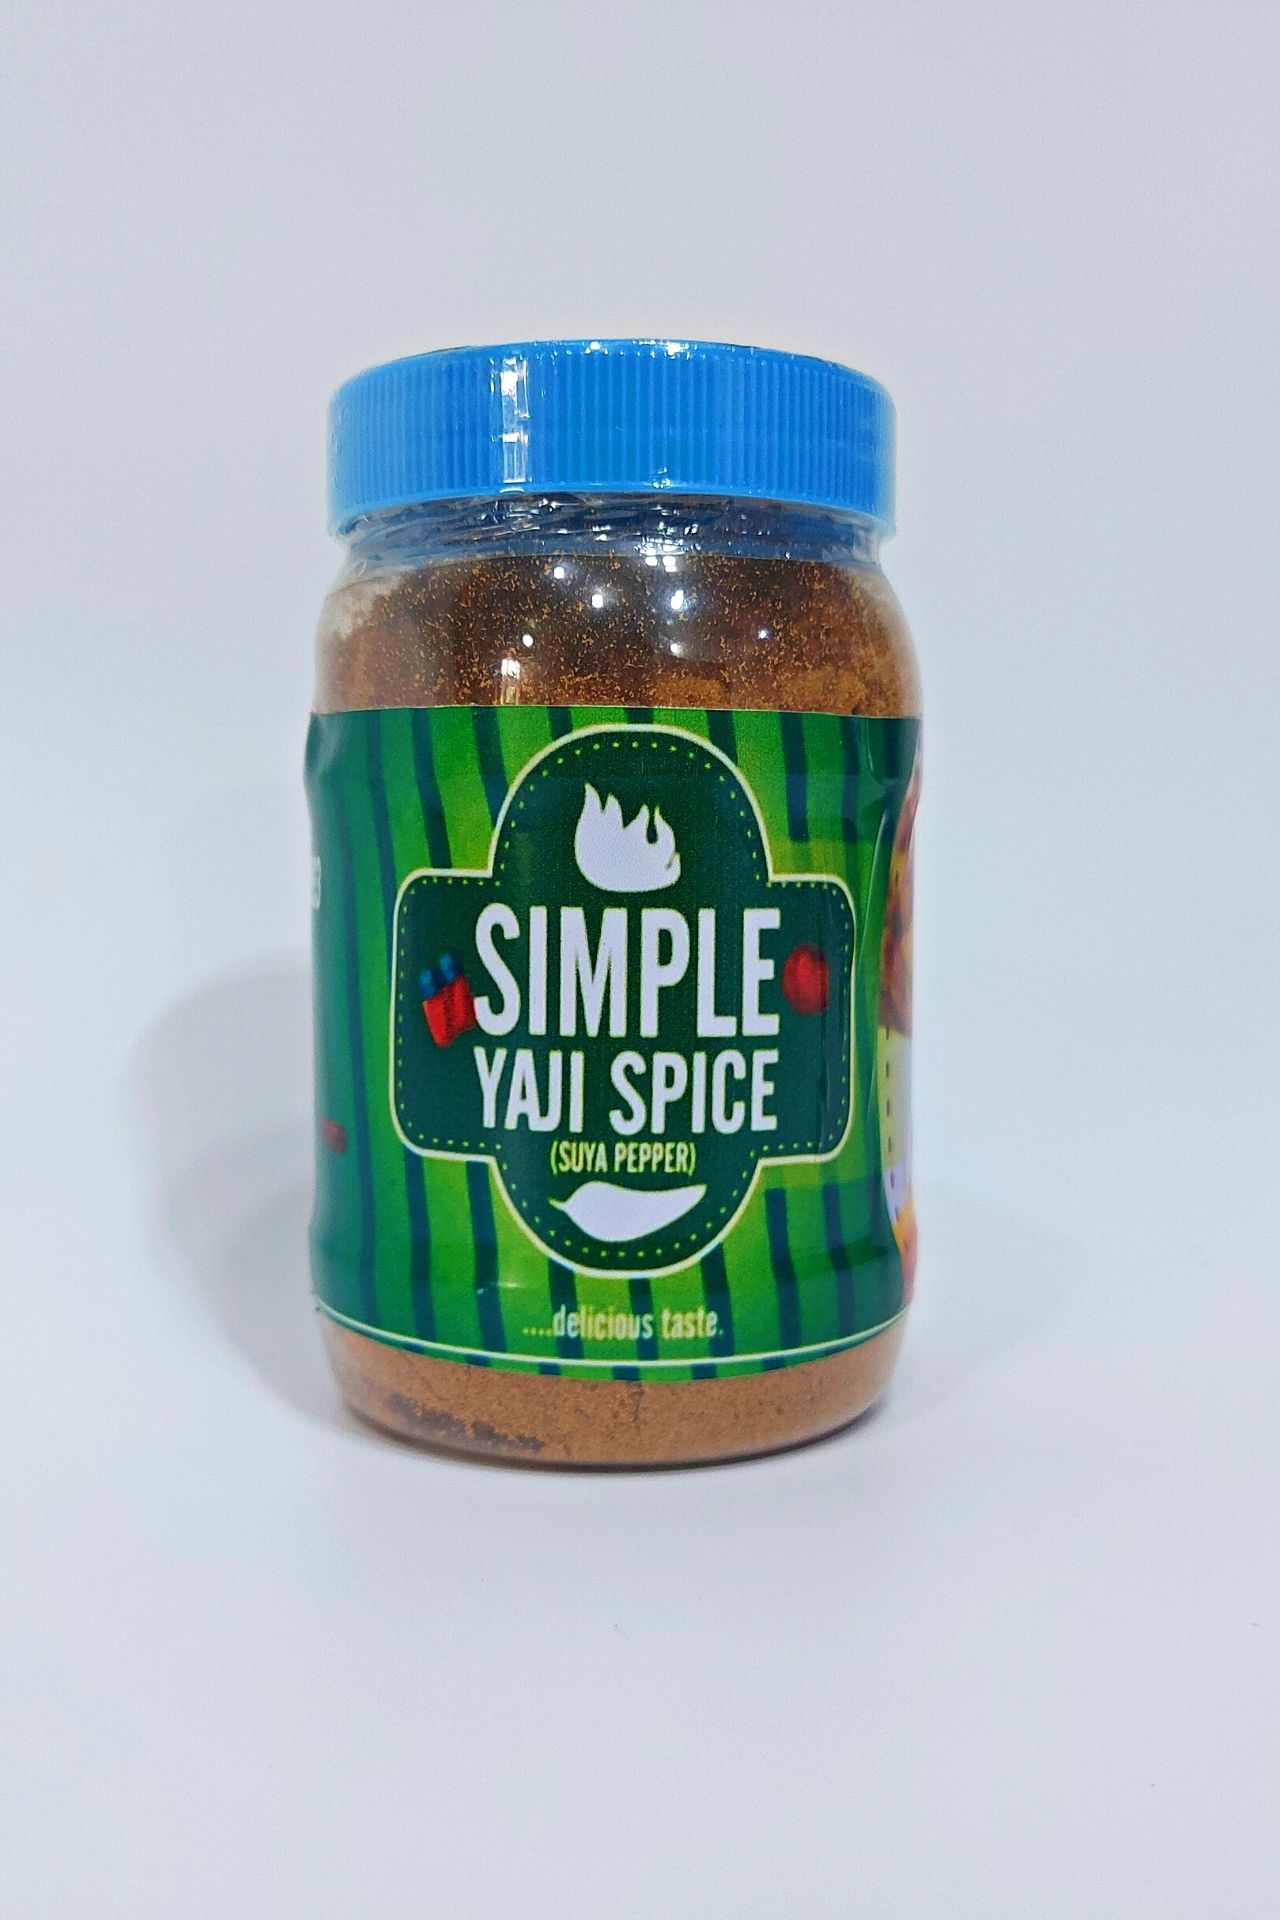 Yaji Spice (Suya Pepper)